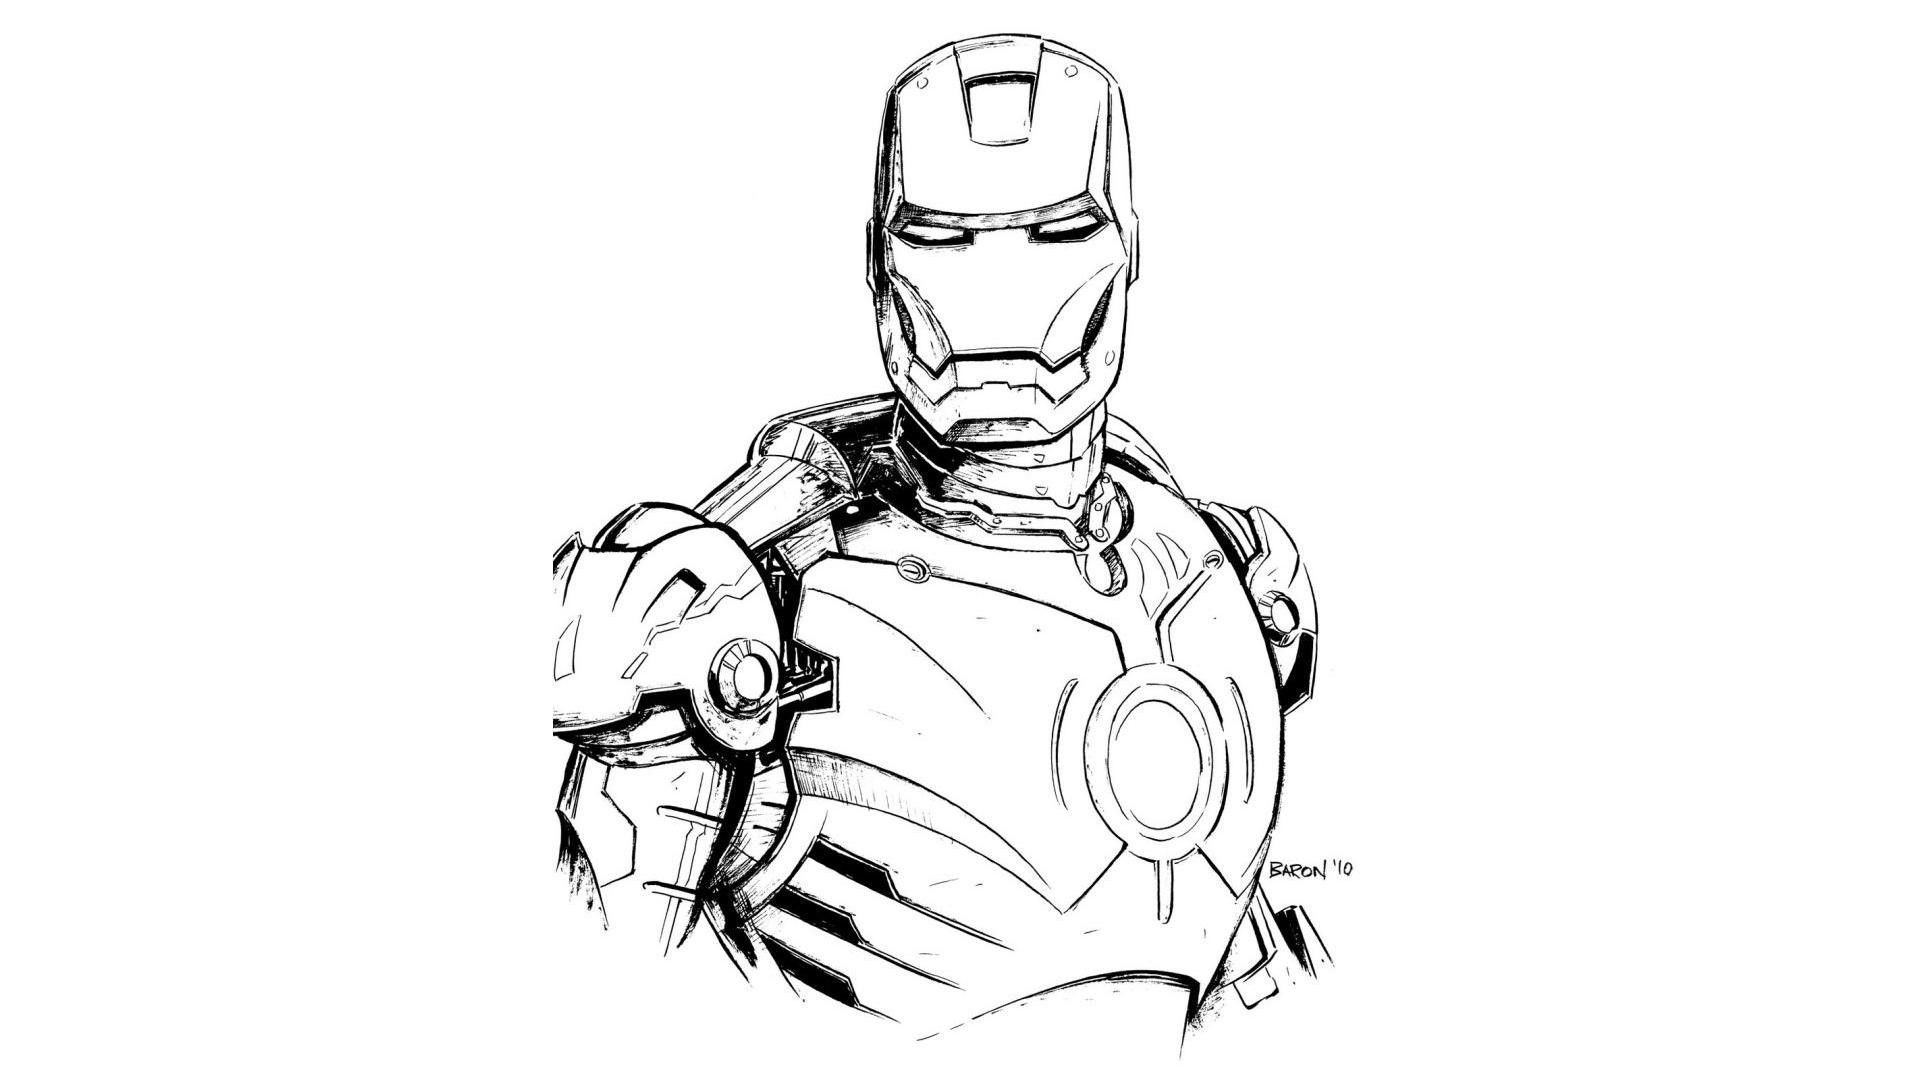 Ironman - pen & pencil sketch | OpenSea